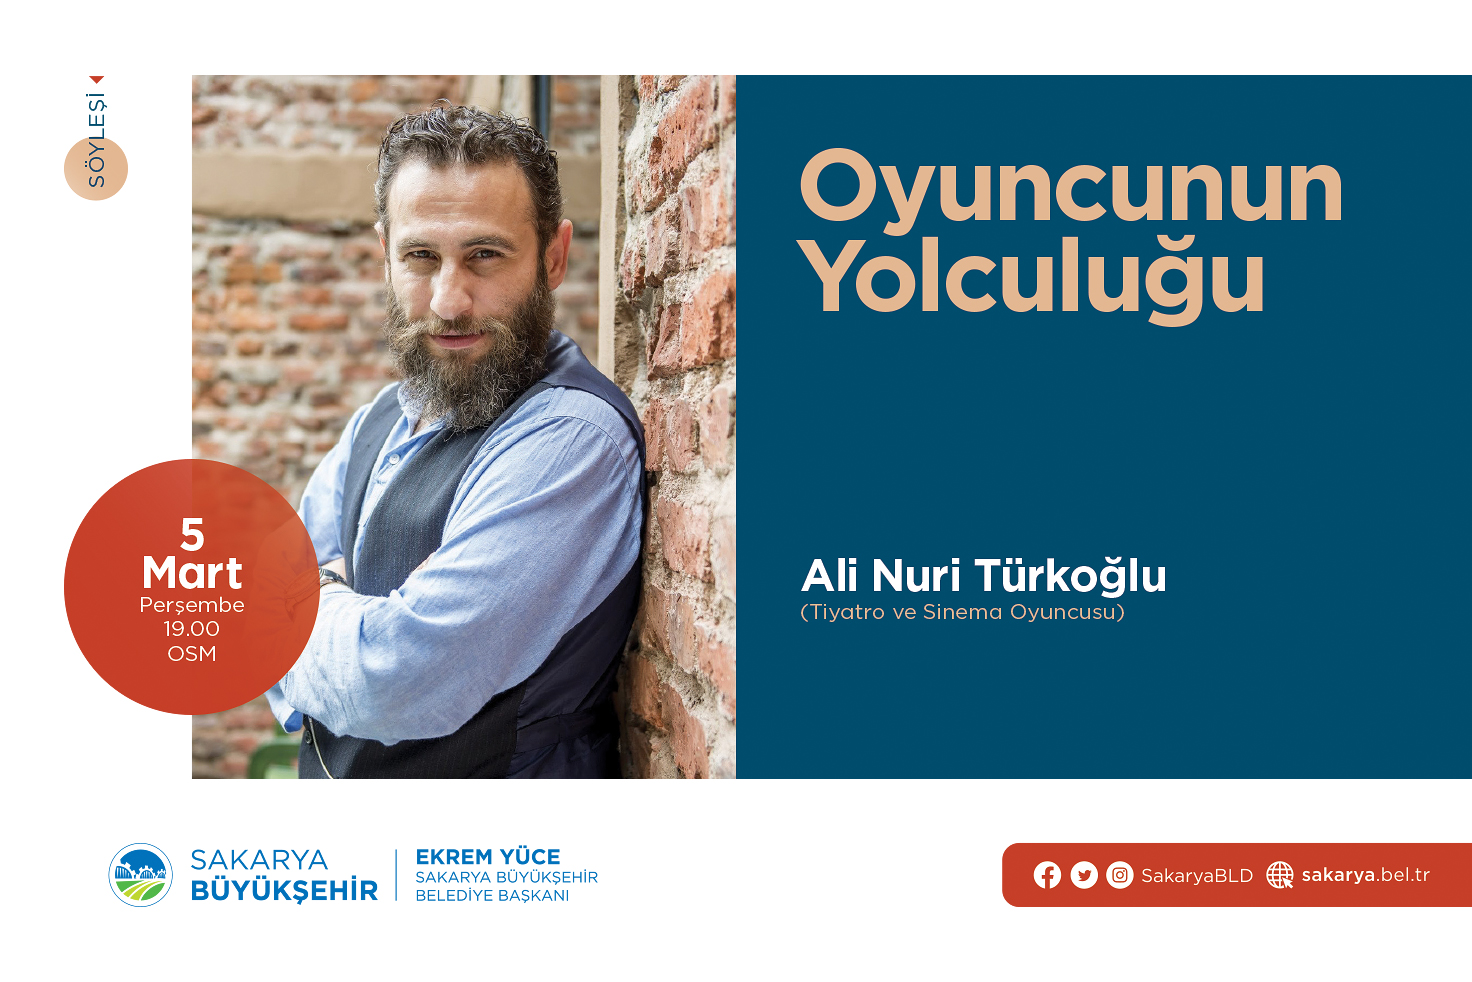 Ali Nuri Türkoğlu ‘Oyuncunun Yolculuğu’nu anlatacak